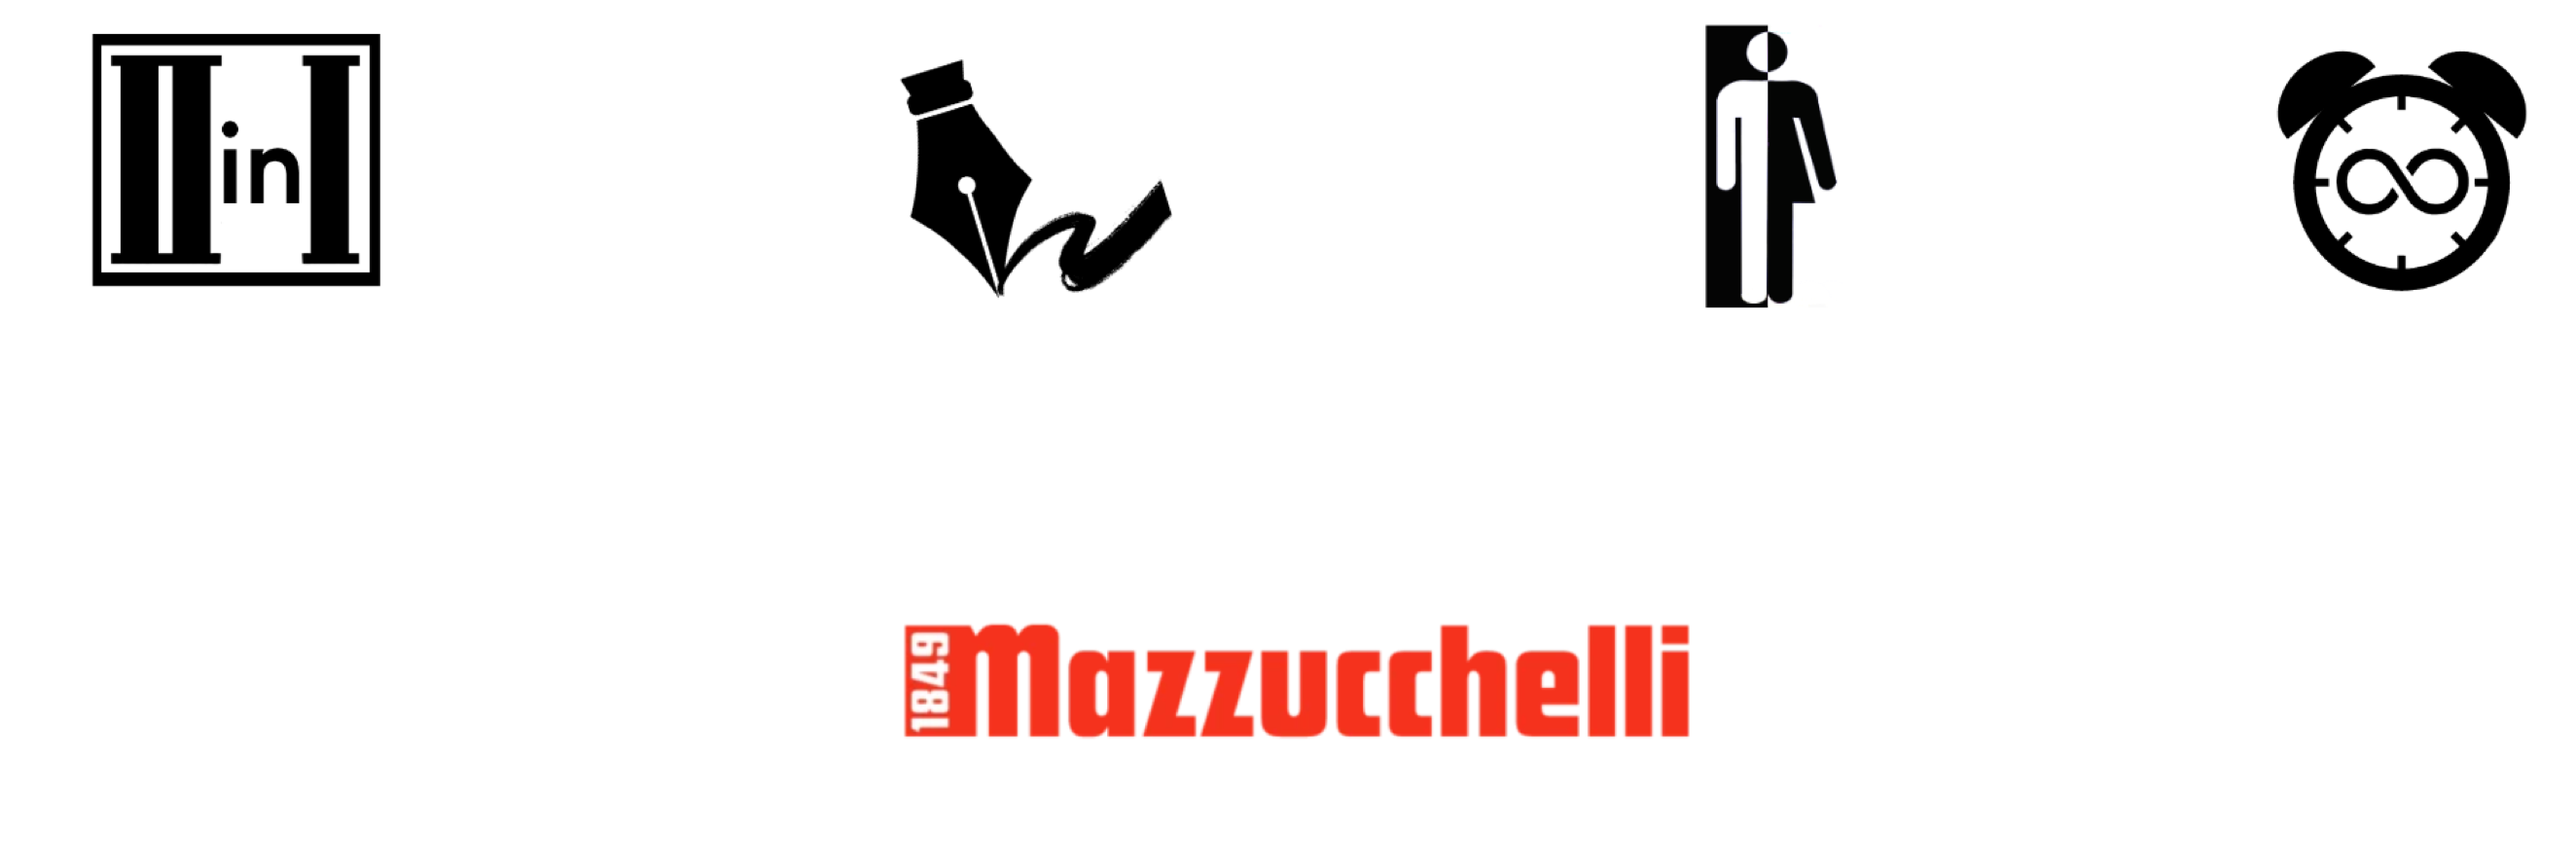 2 in 1, exclusive design, unisex, timeless, mazzucchelli premium acetate